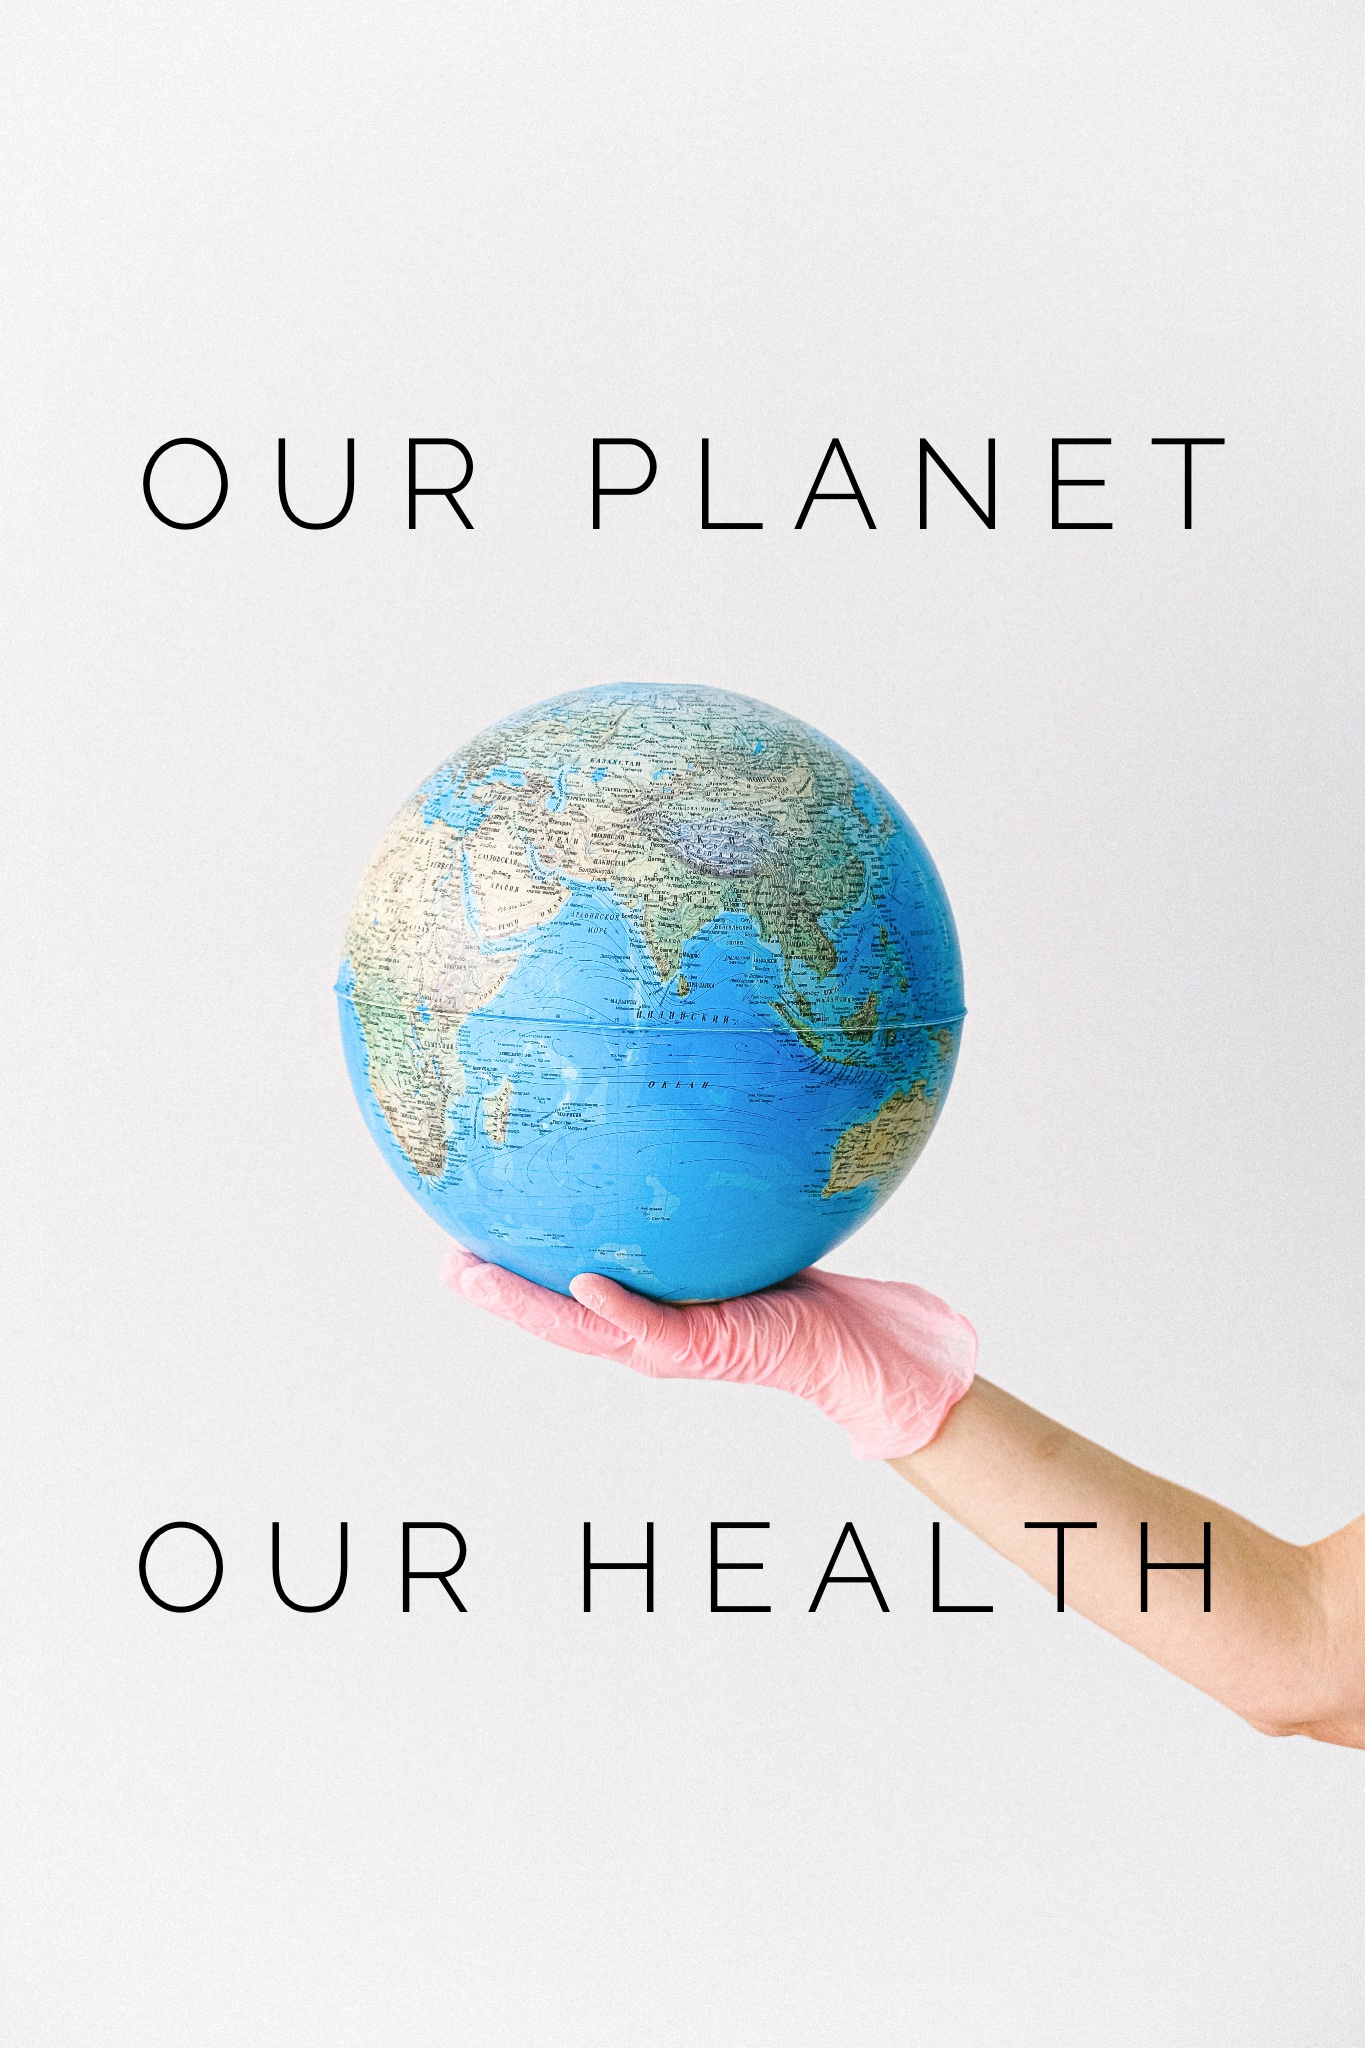 Unsere Erde, unsere Gesundheit...